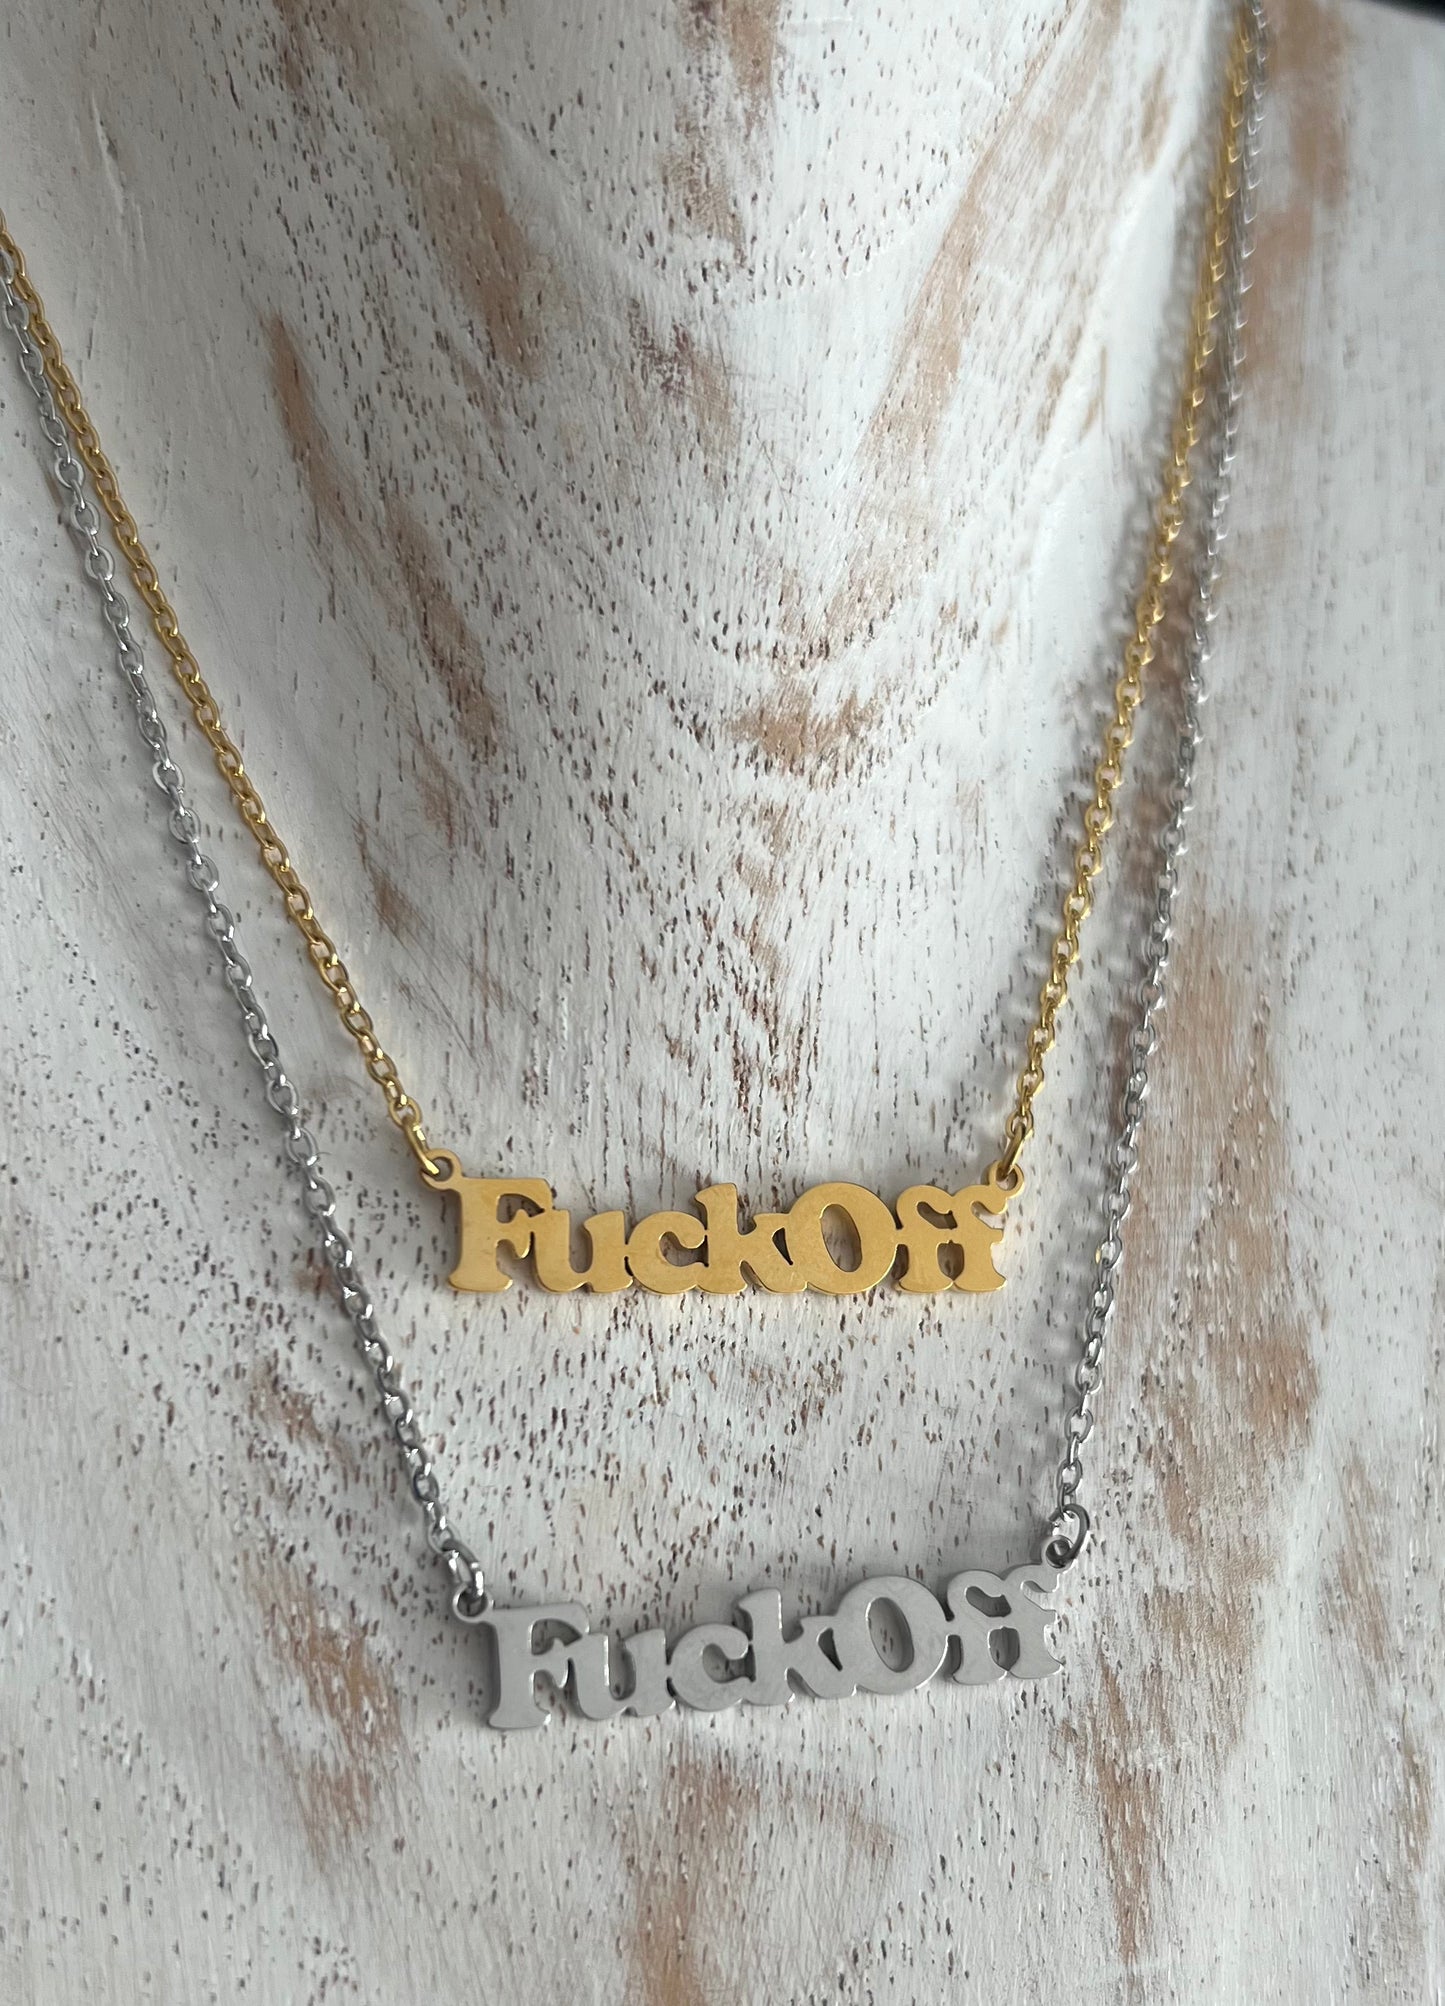 FuckOff necklace